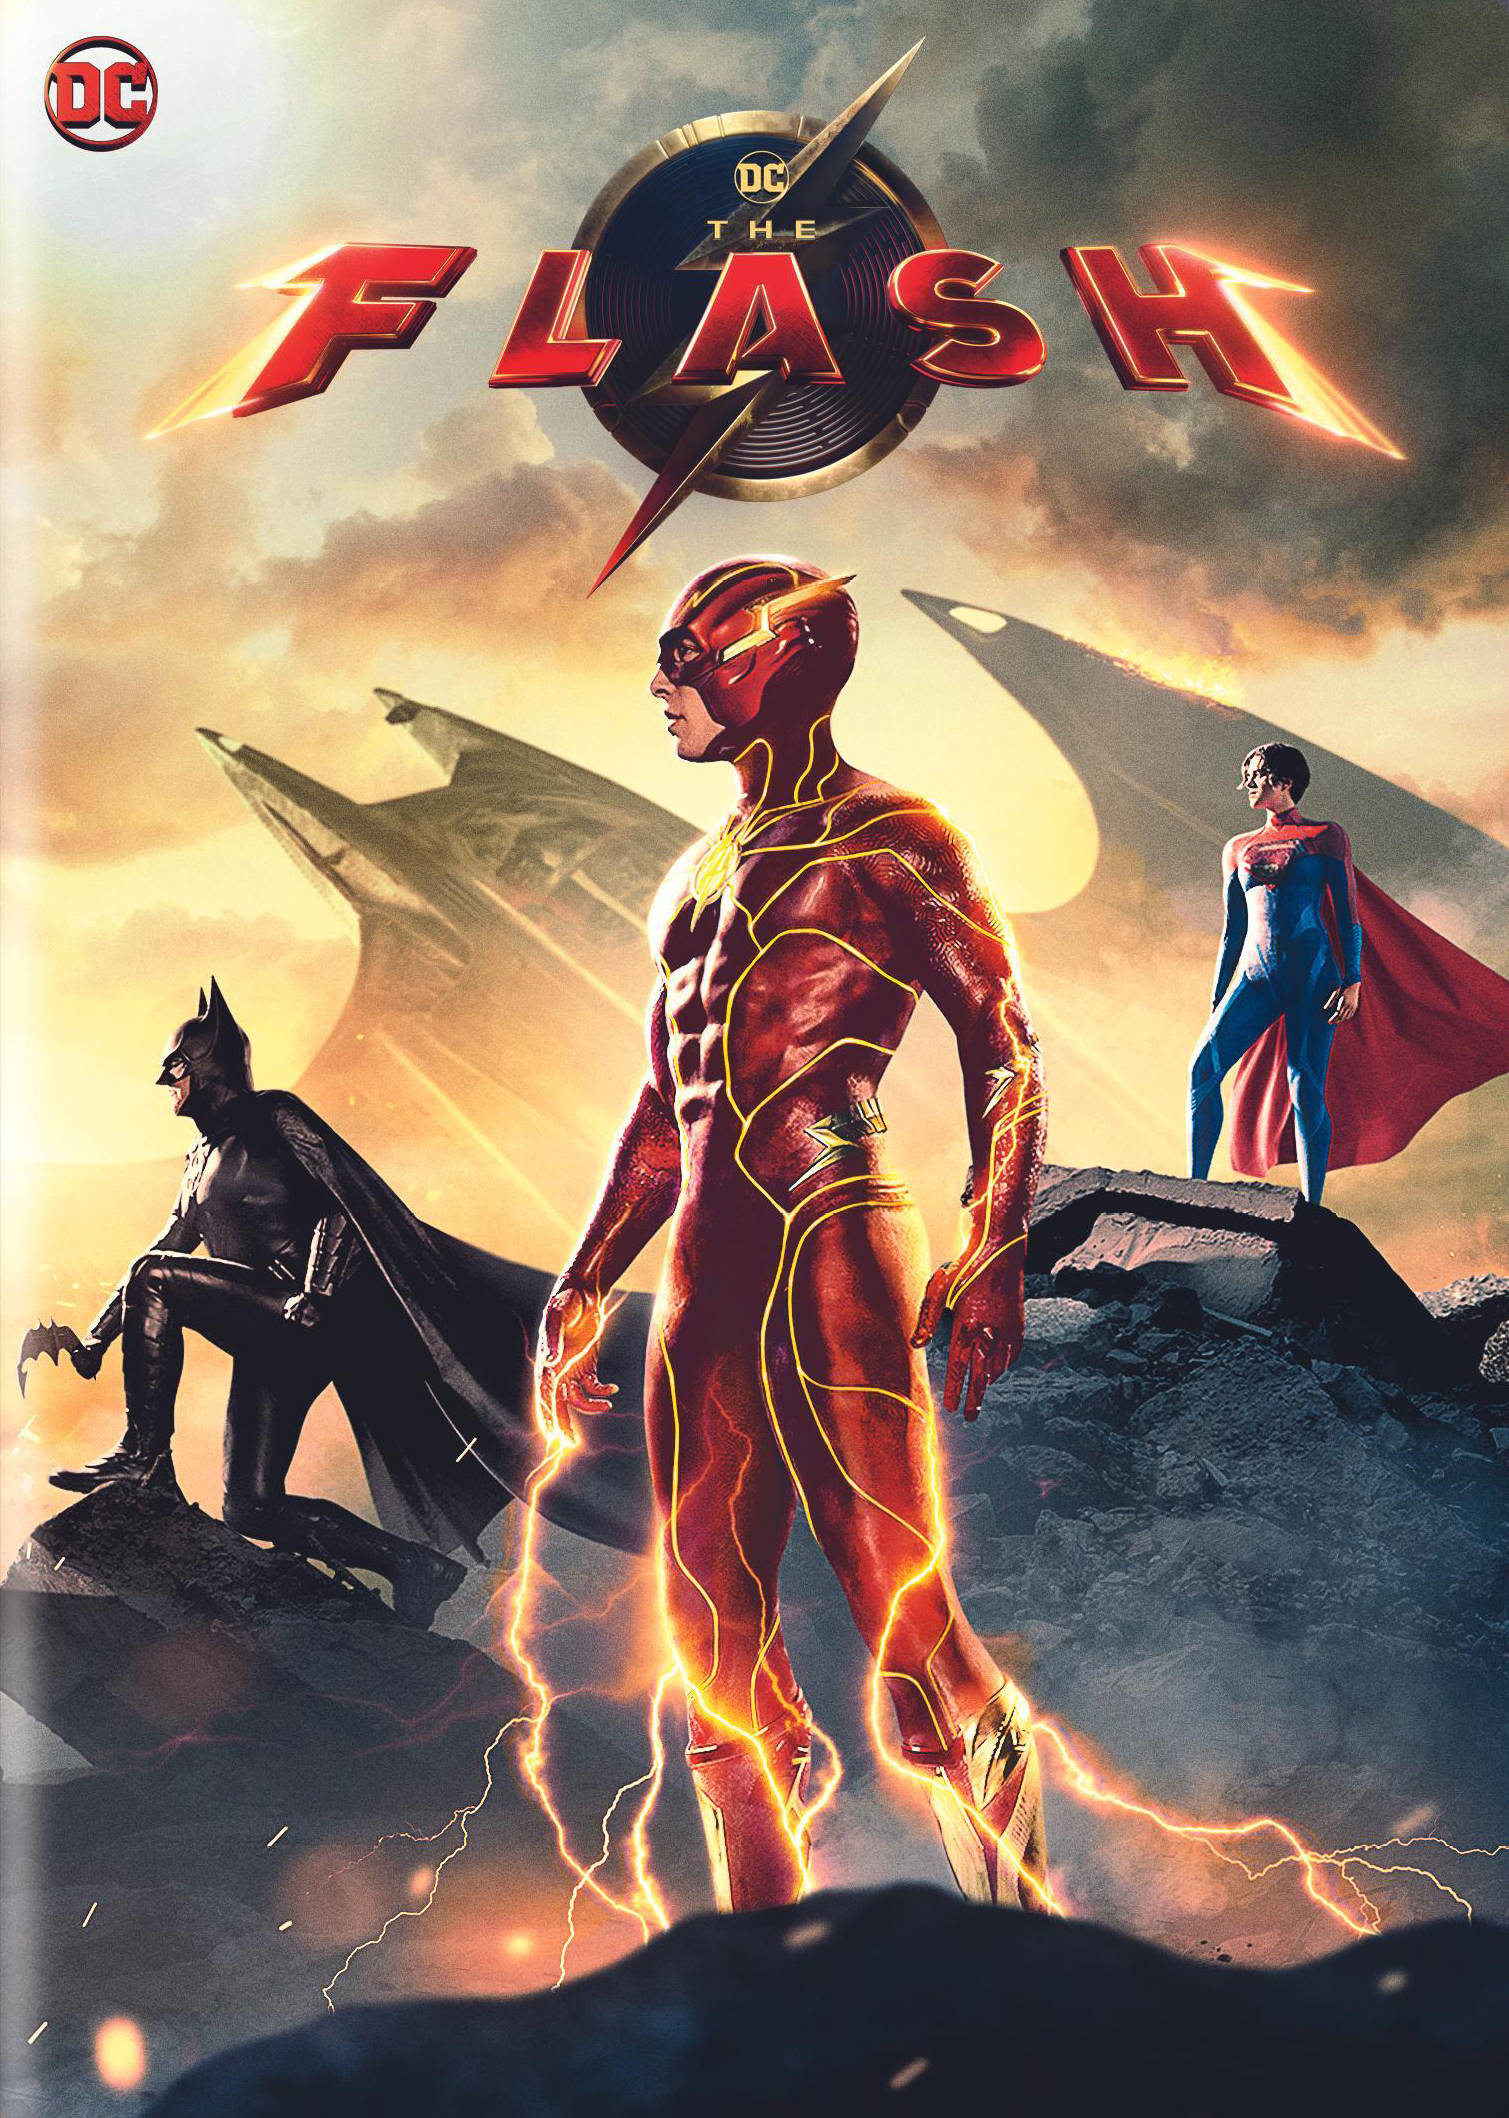 The Flash (2023) - IMDb